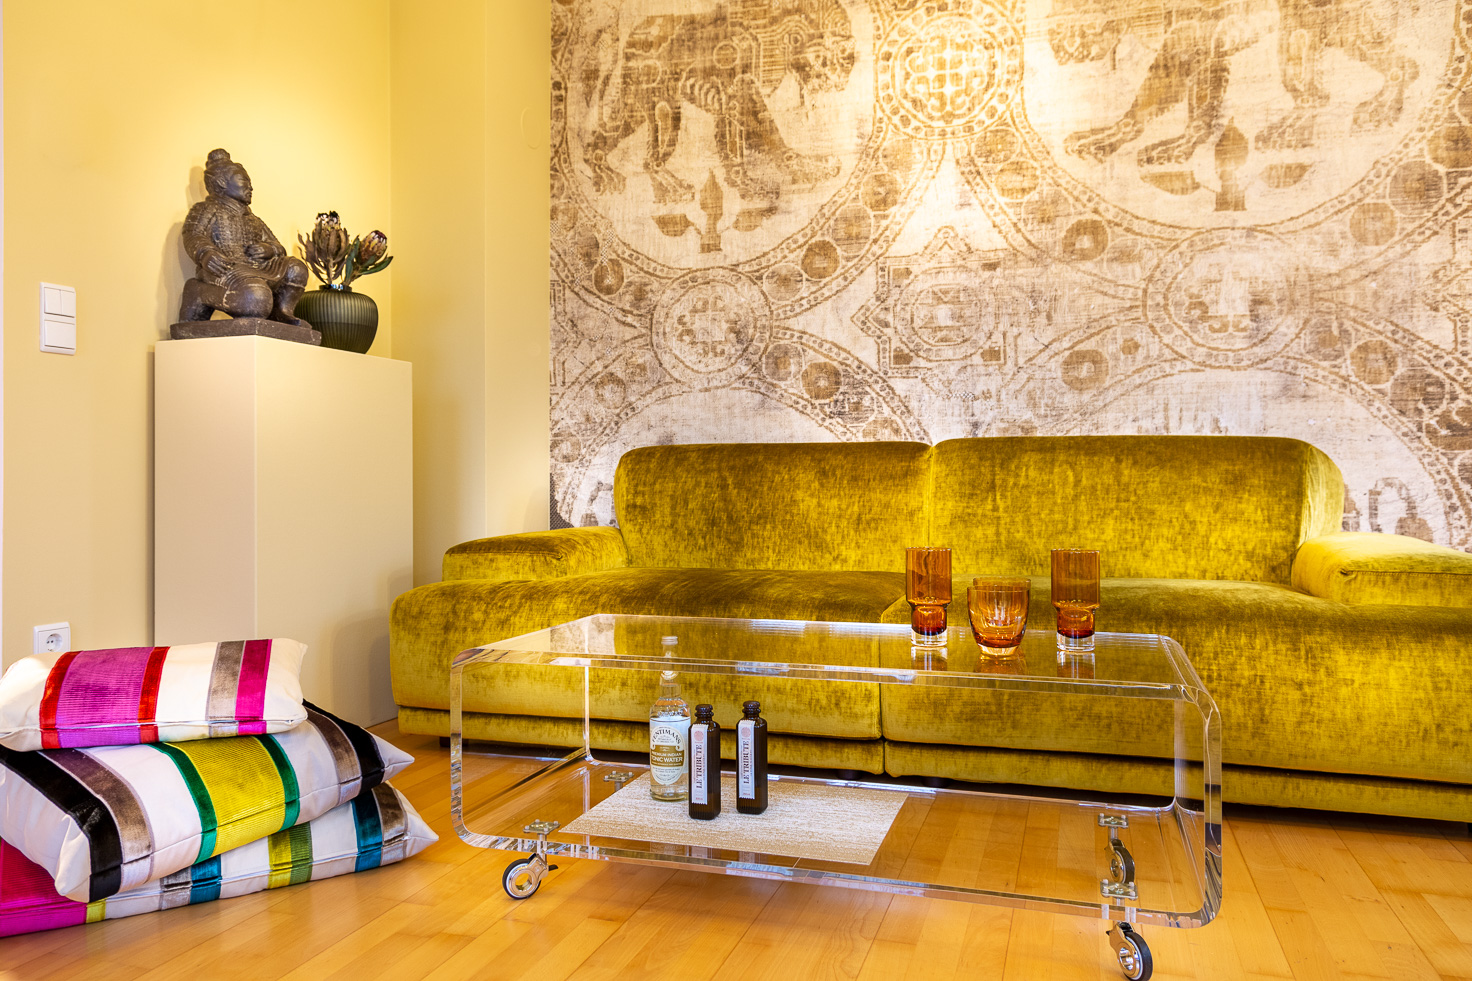 Goldfarbenes, samtiges Sofa von Twils mit Sofatisch aus Acryl, daneben Sitzkissen und Podest mit Terrakotta-Krieger Figur vor byzantinischer Tapete.